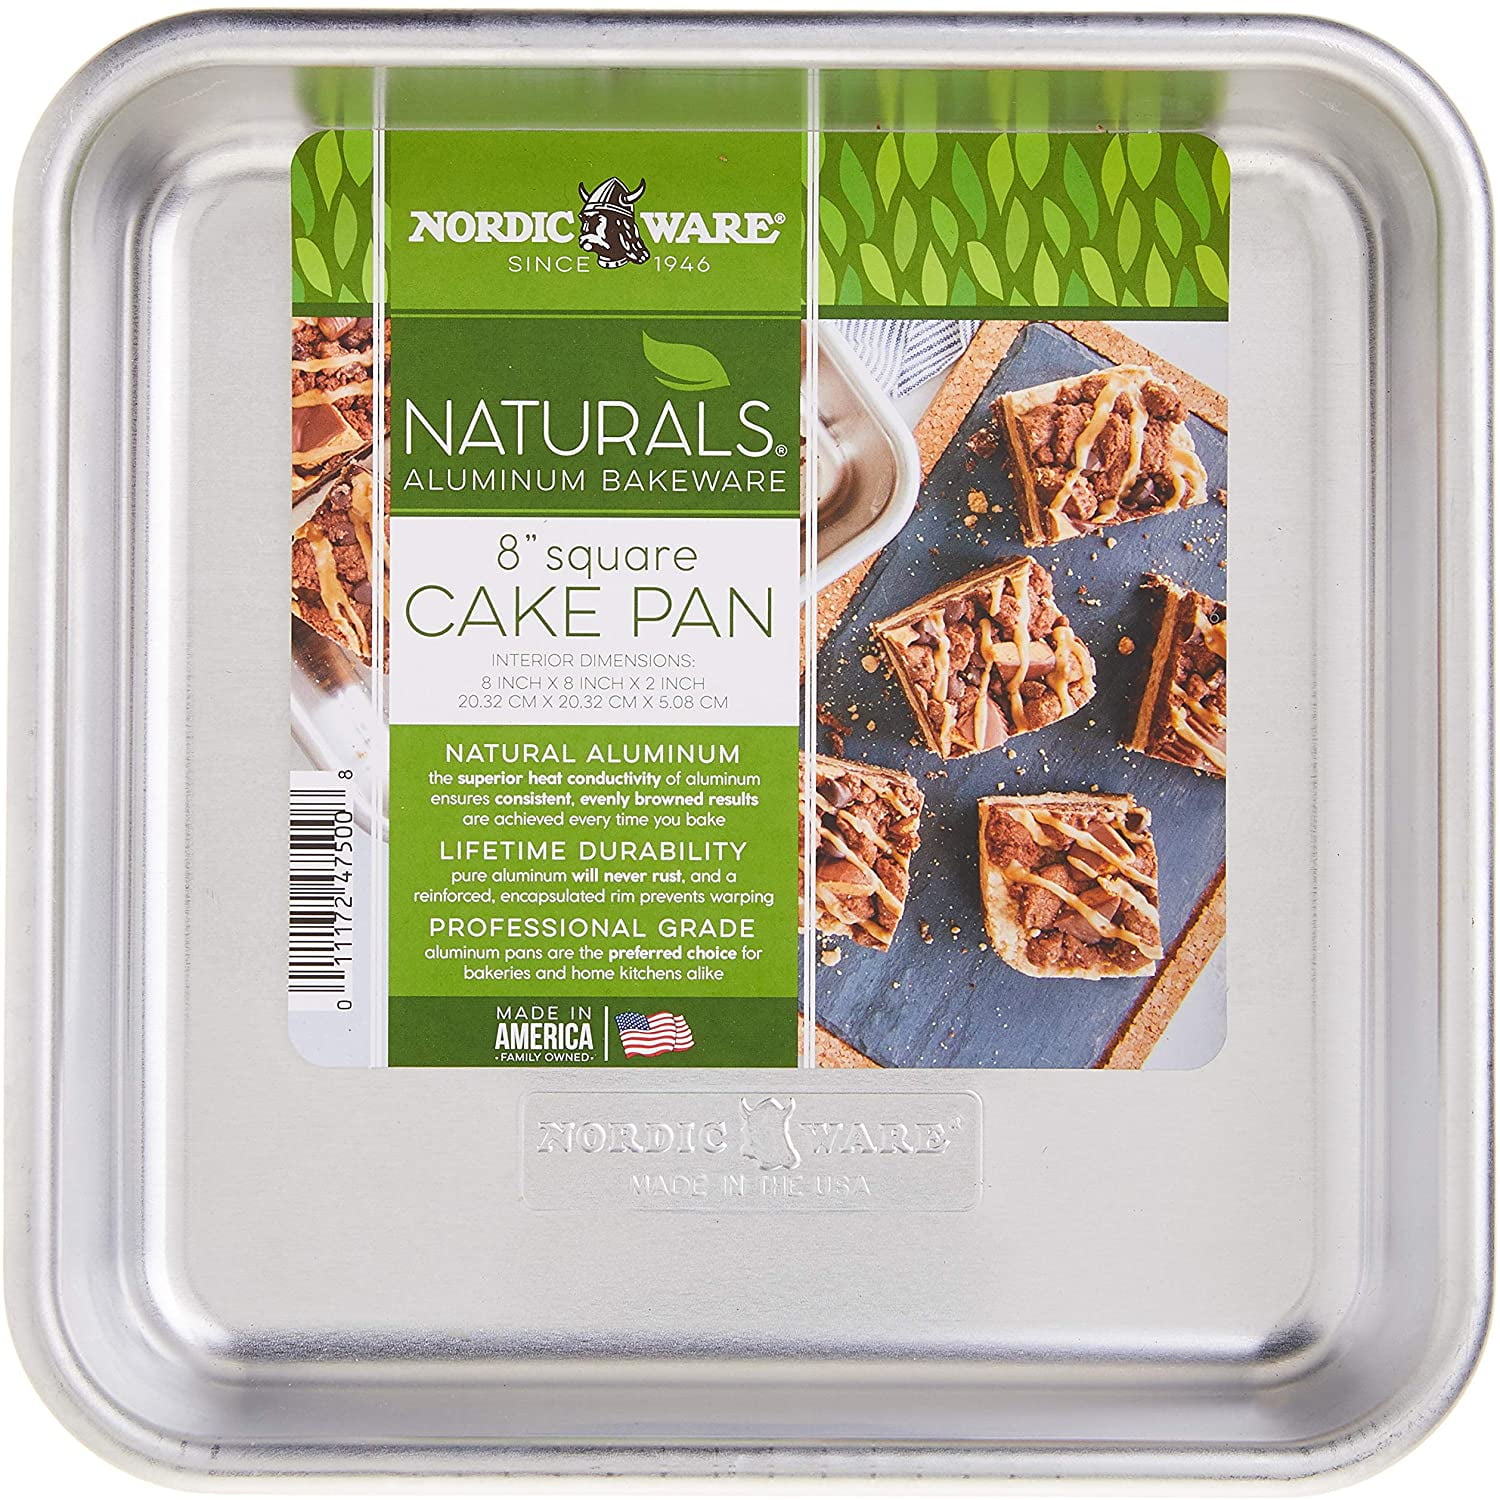 Nordic Ware 8 X 8 Square Cake Pan : Target